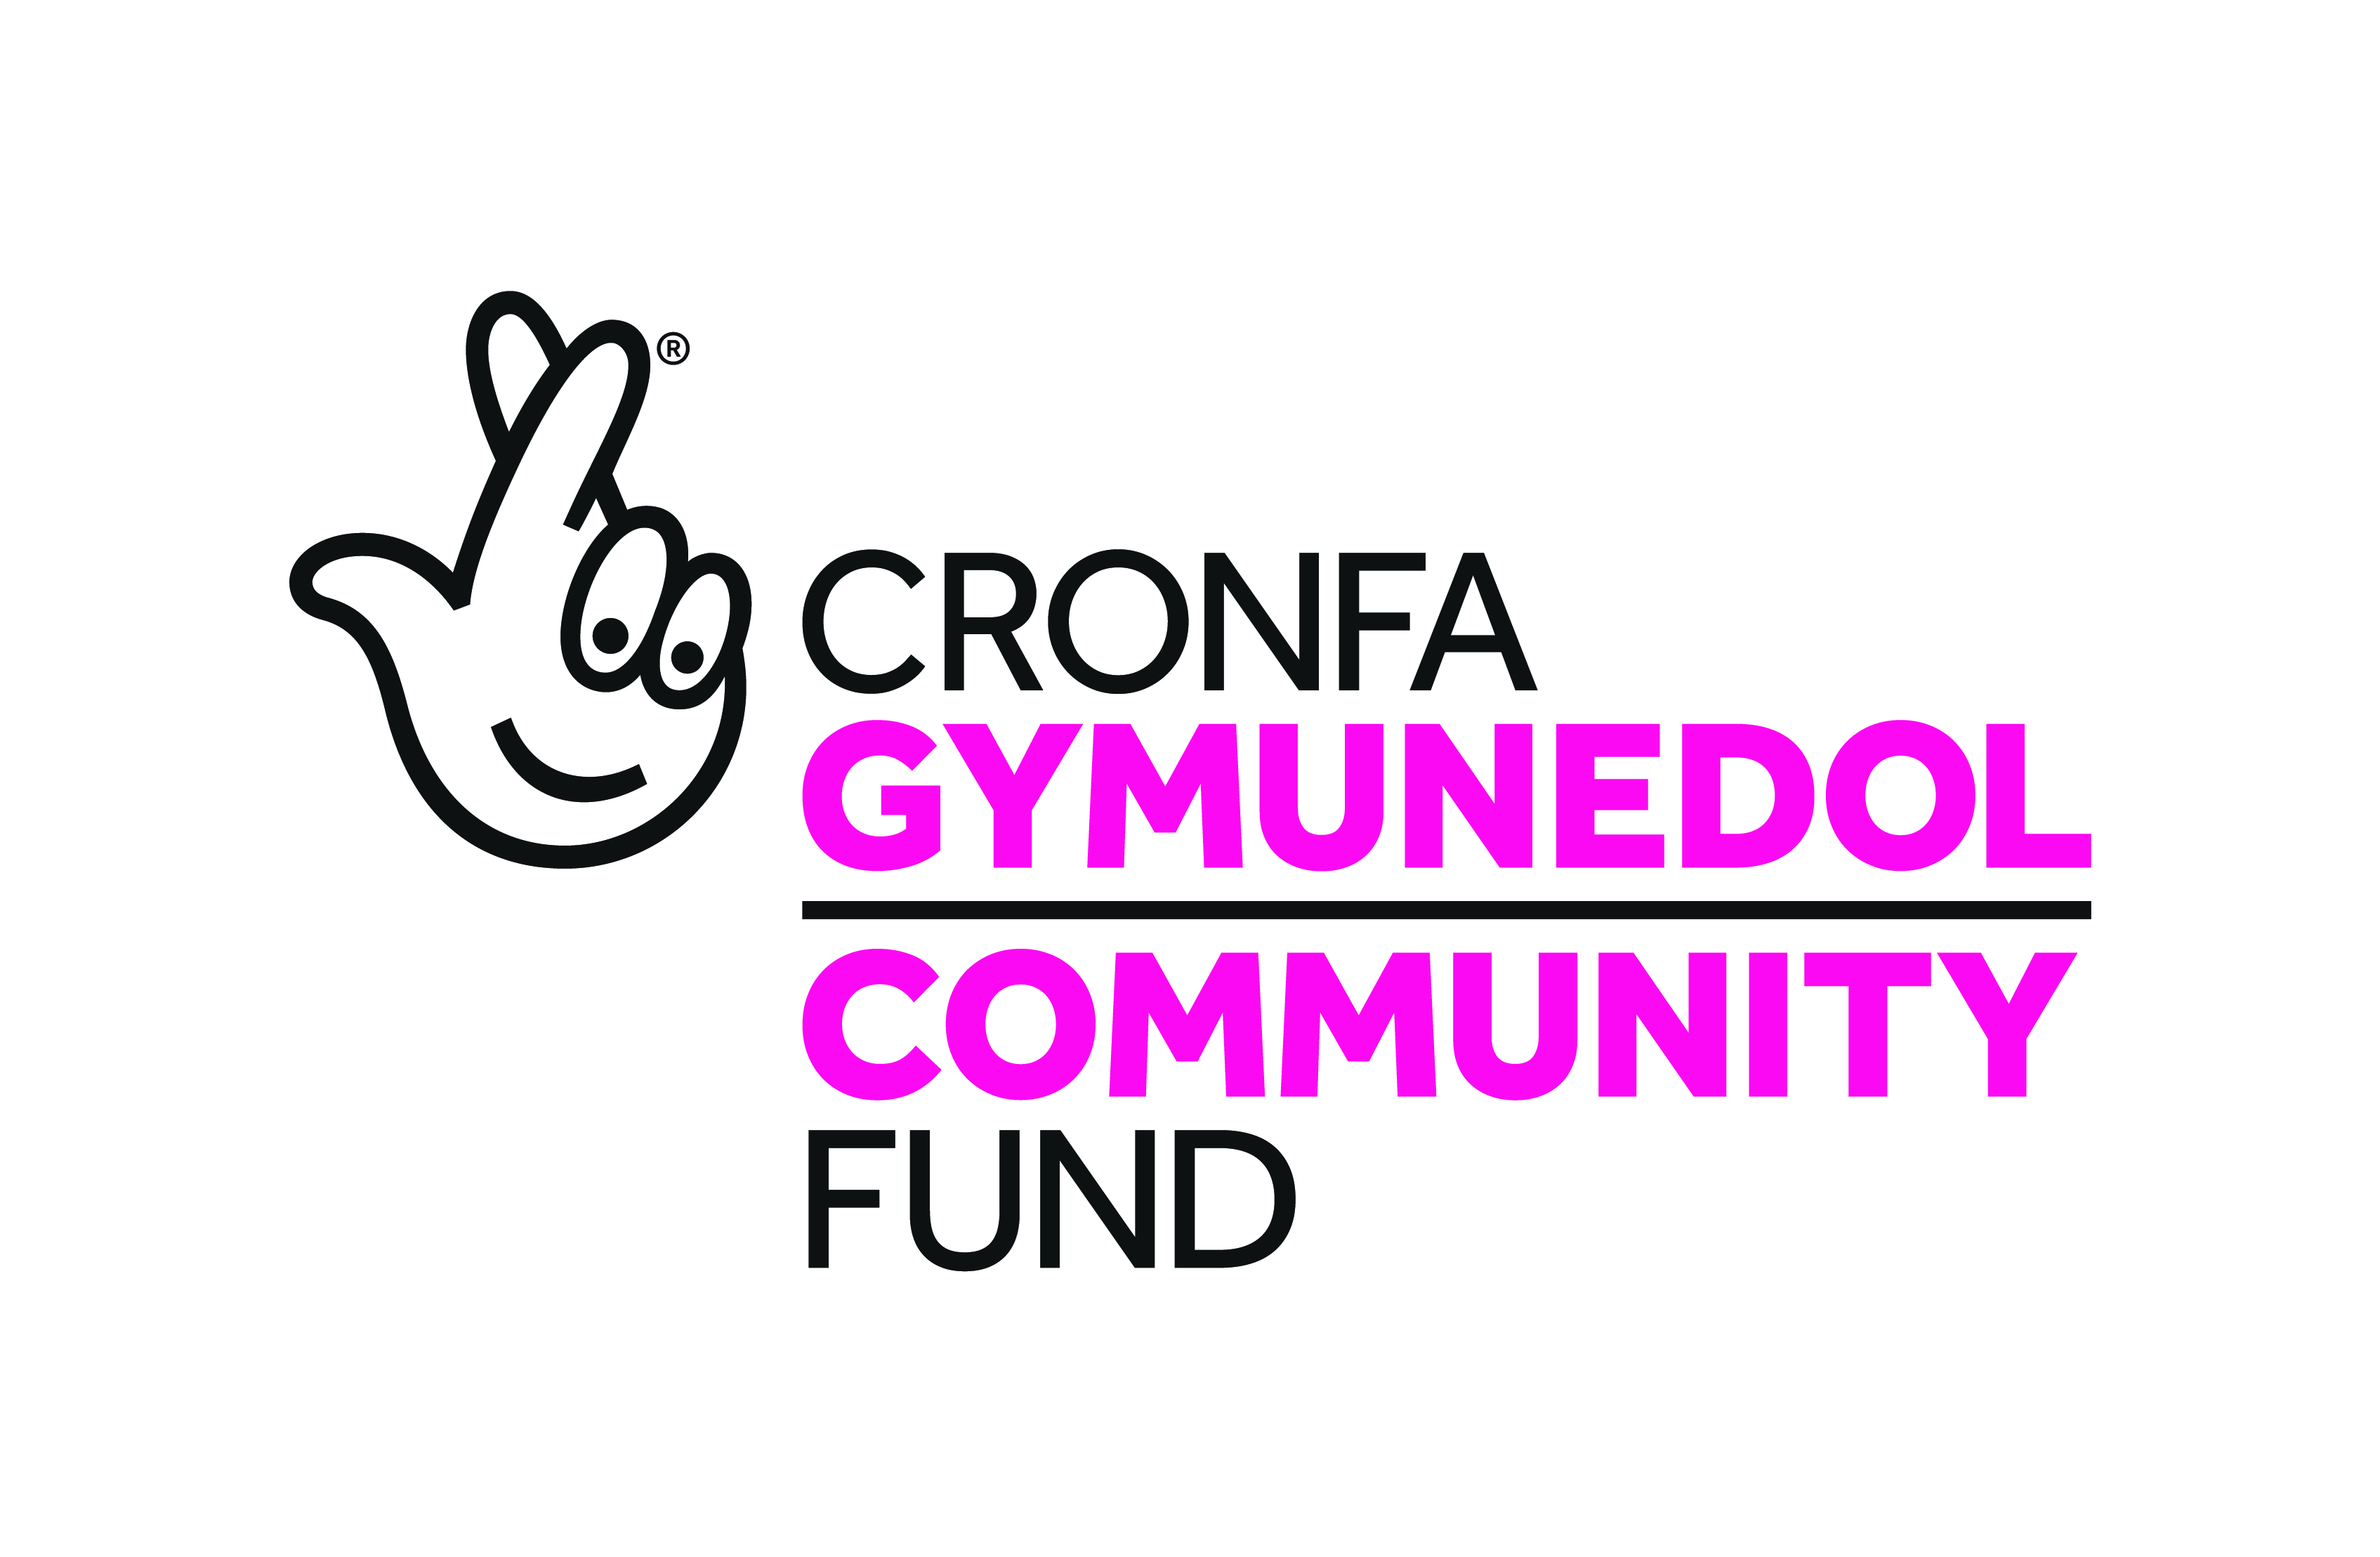 Cronfa Gymunedol Community Fund